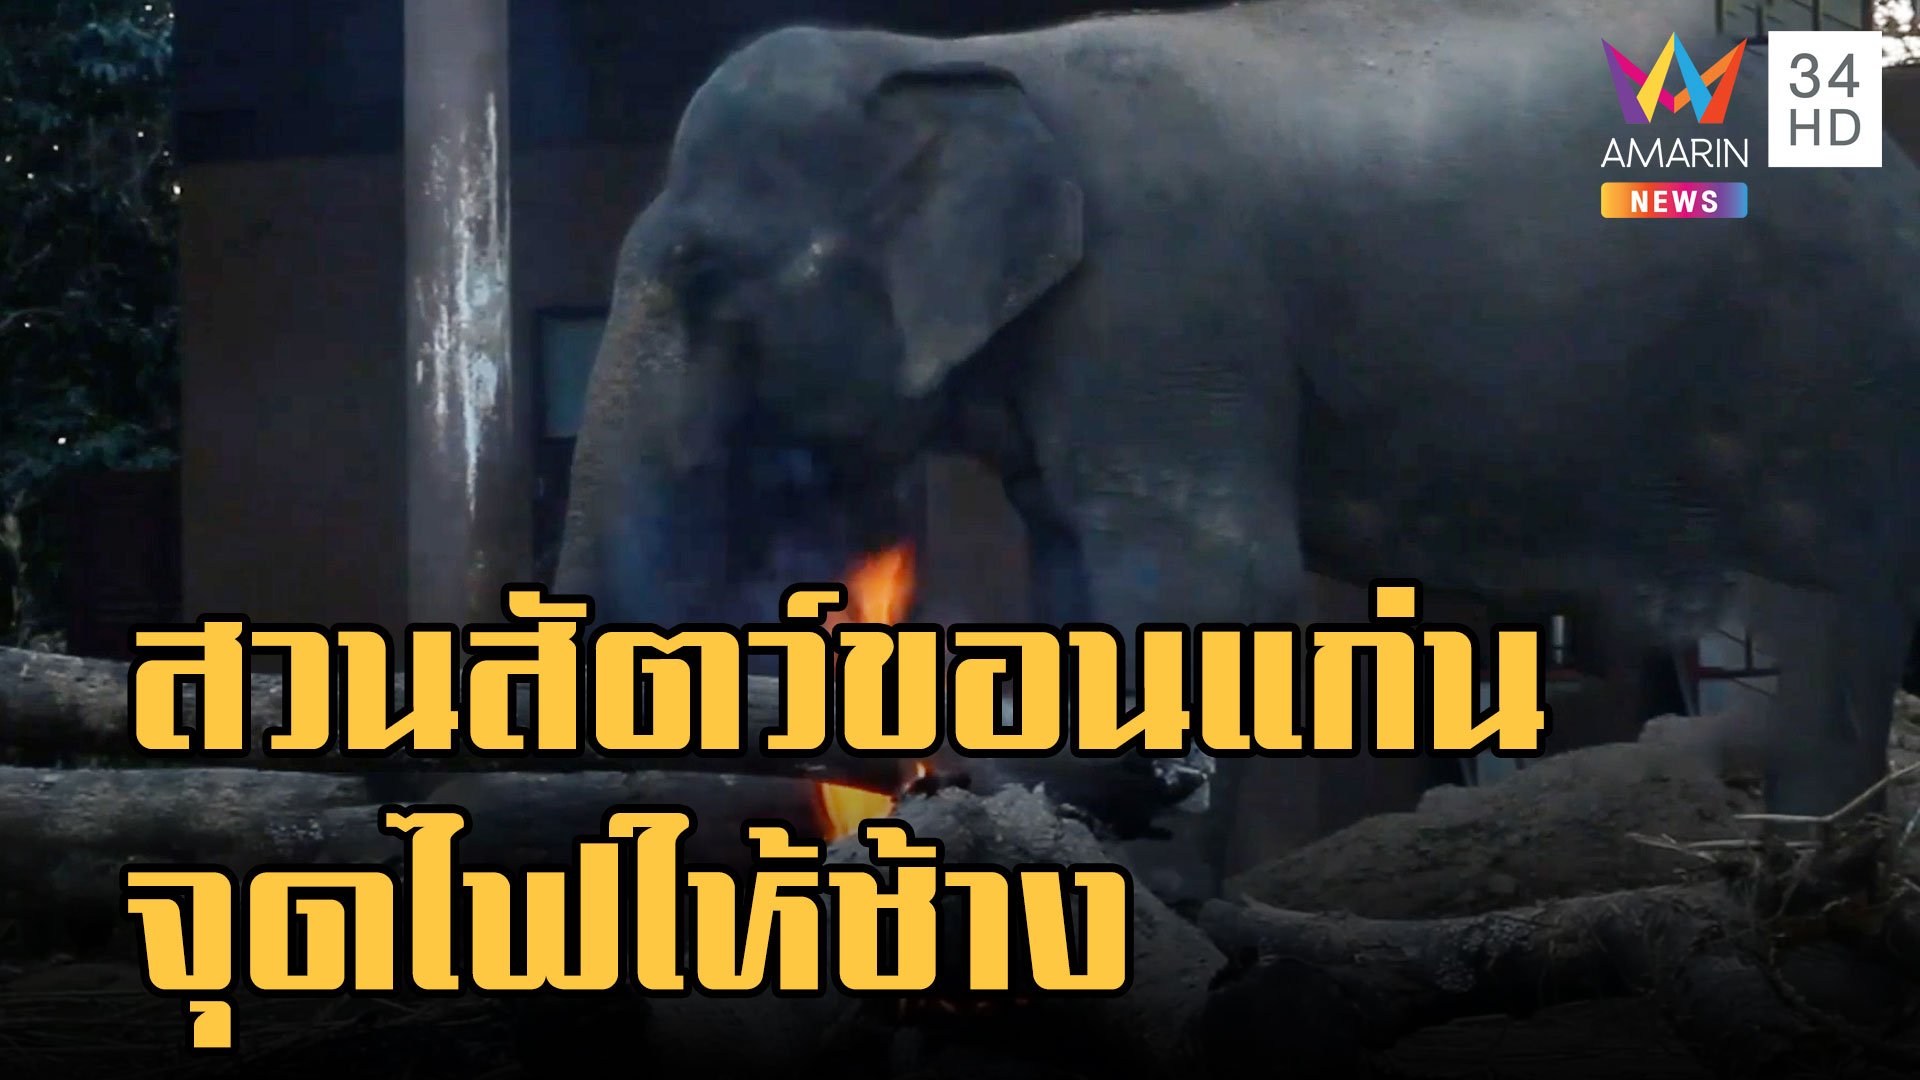 สวนสัตว์ขอนแก่นจุดไฟสร้างความอบอุ่นให้ช้าง | ข่าวเที่ยงอมรินทร์ | 23 ธ.ค. 65 | AMARIN TVHD34